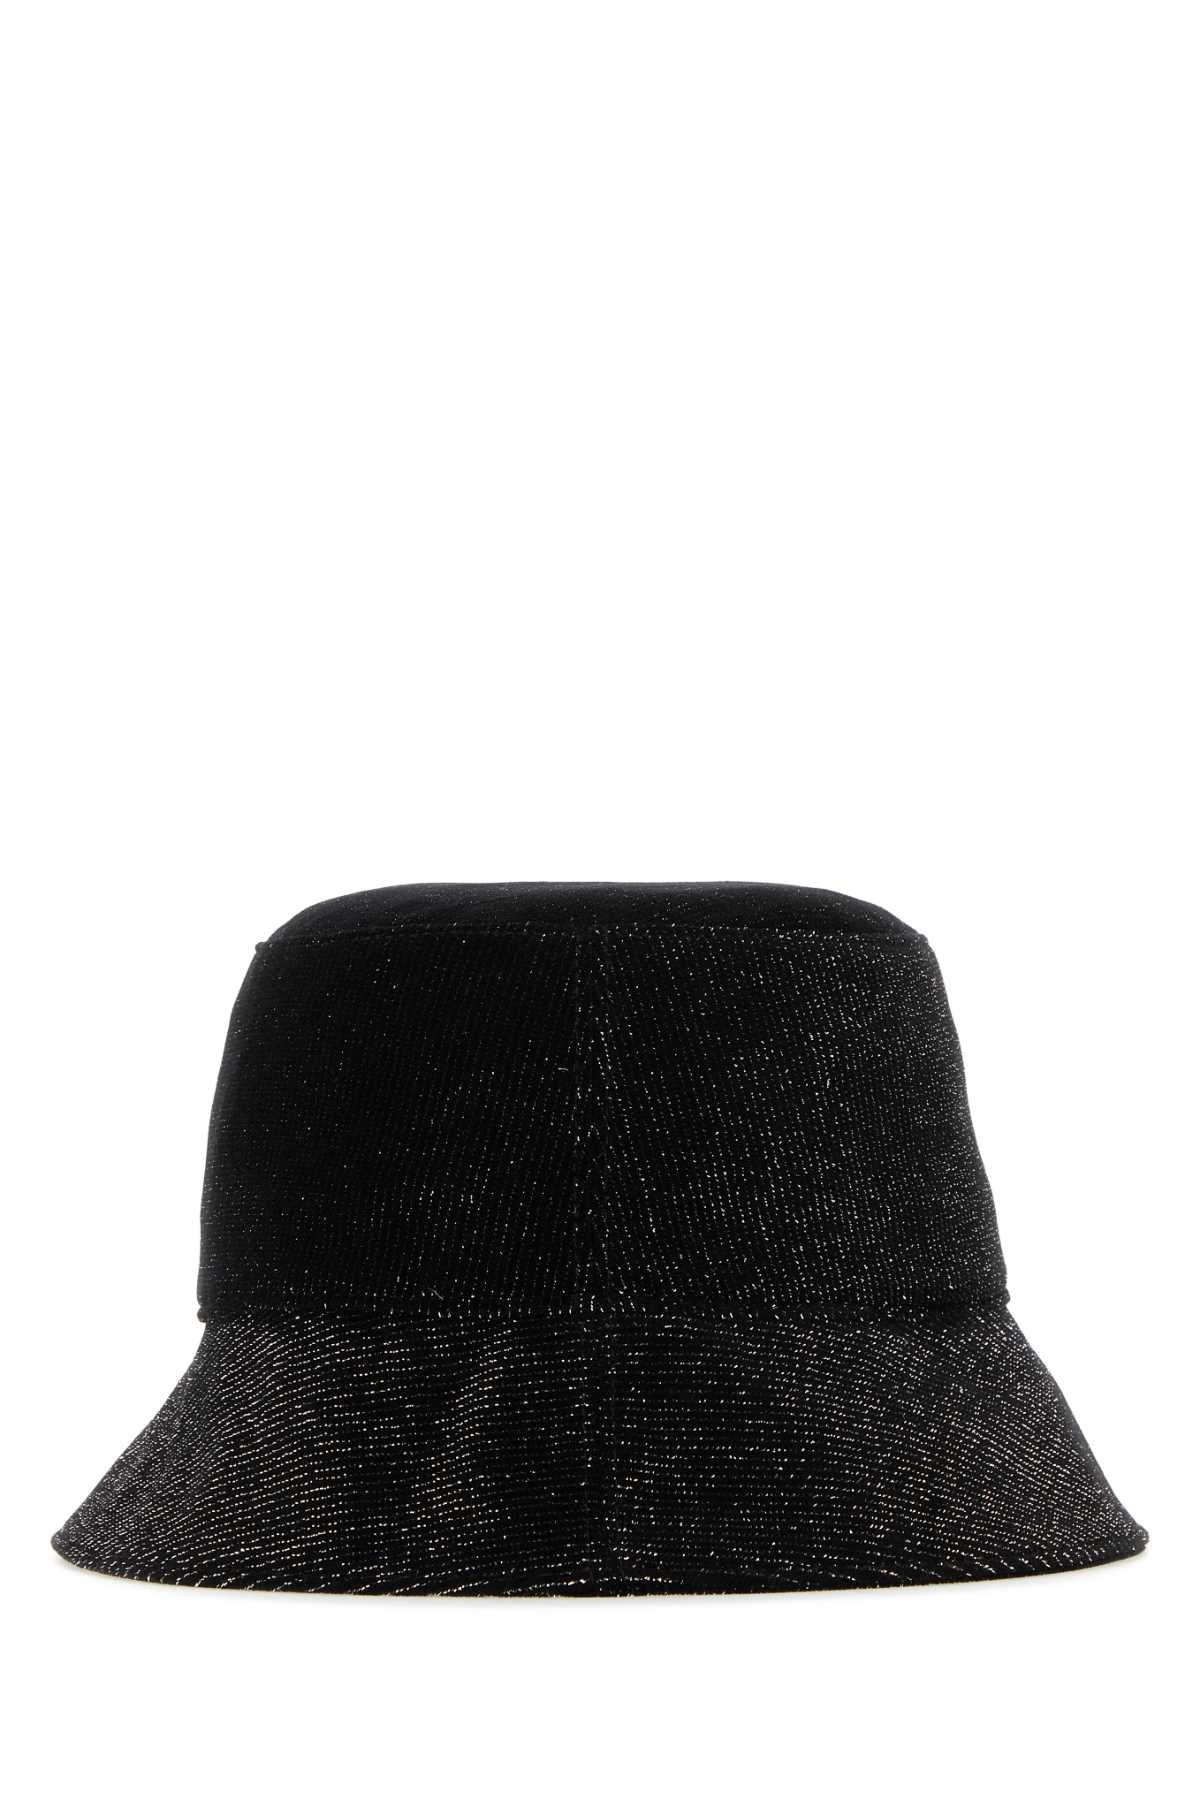 Helen Kaminski Black Velvet Florenze Bucket Hat In Blacksparkle